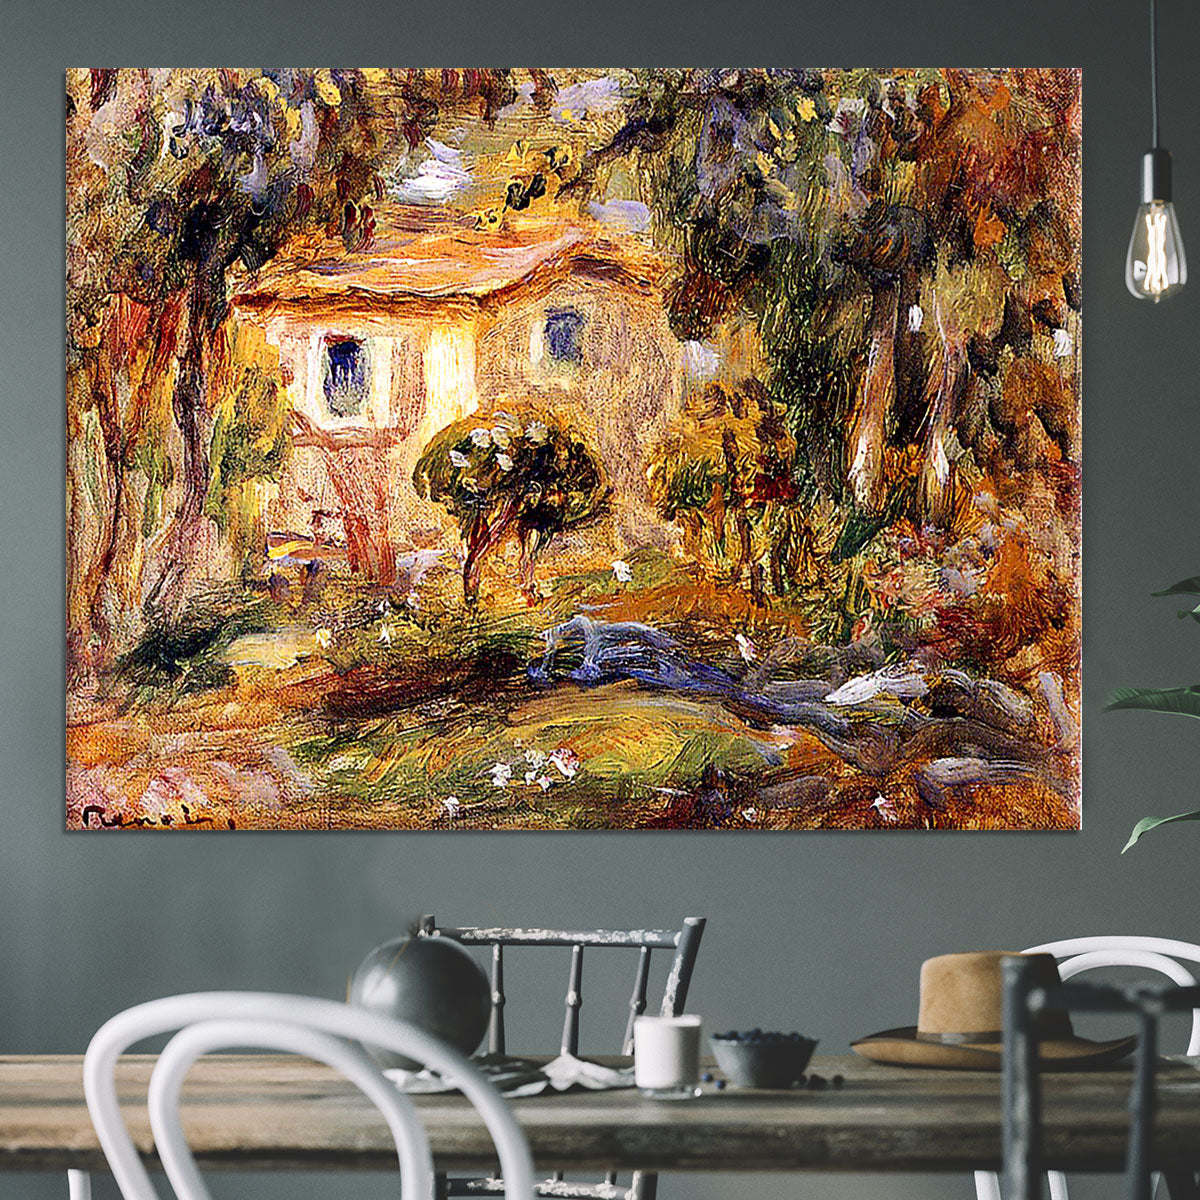 Landscape1 by Renoir Canvas Print or Poster - Canvas Art Rocks - 3